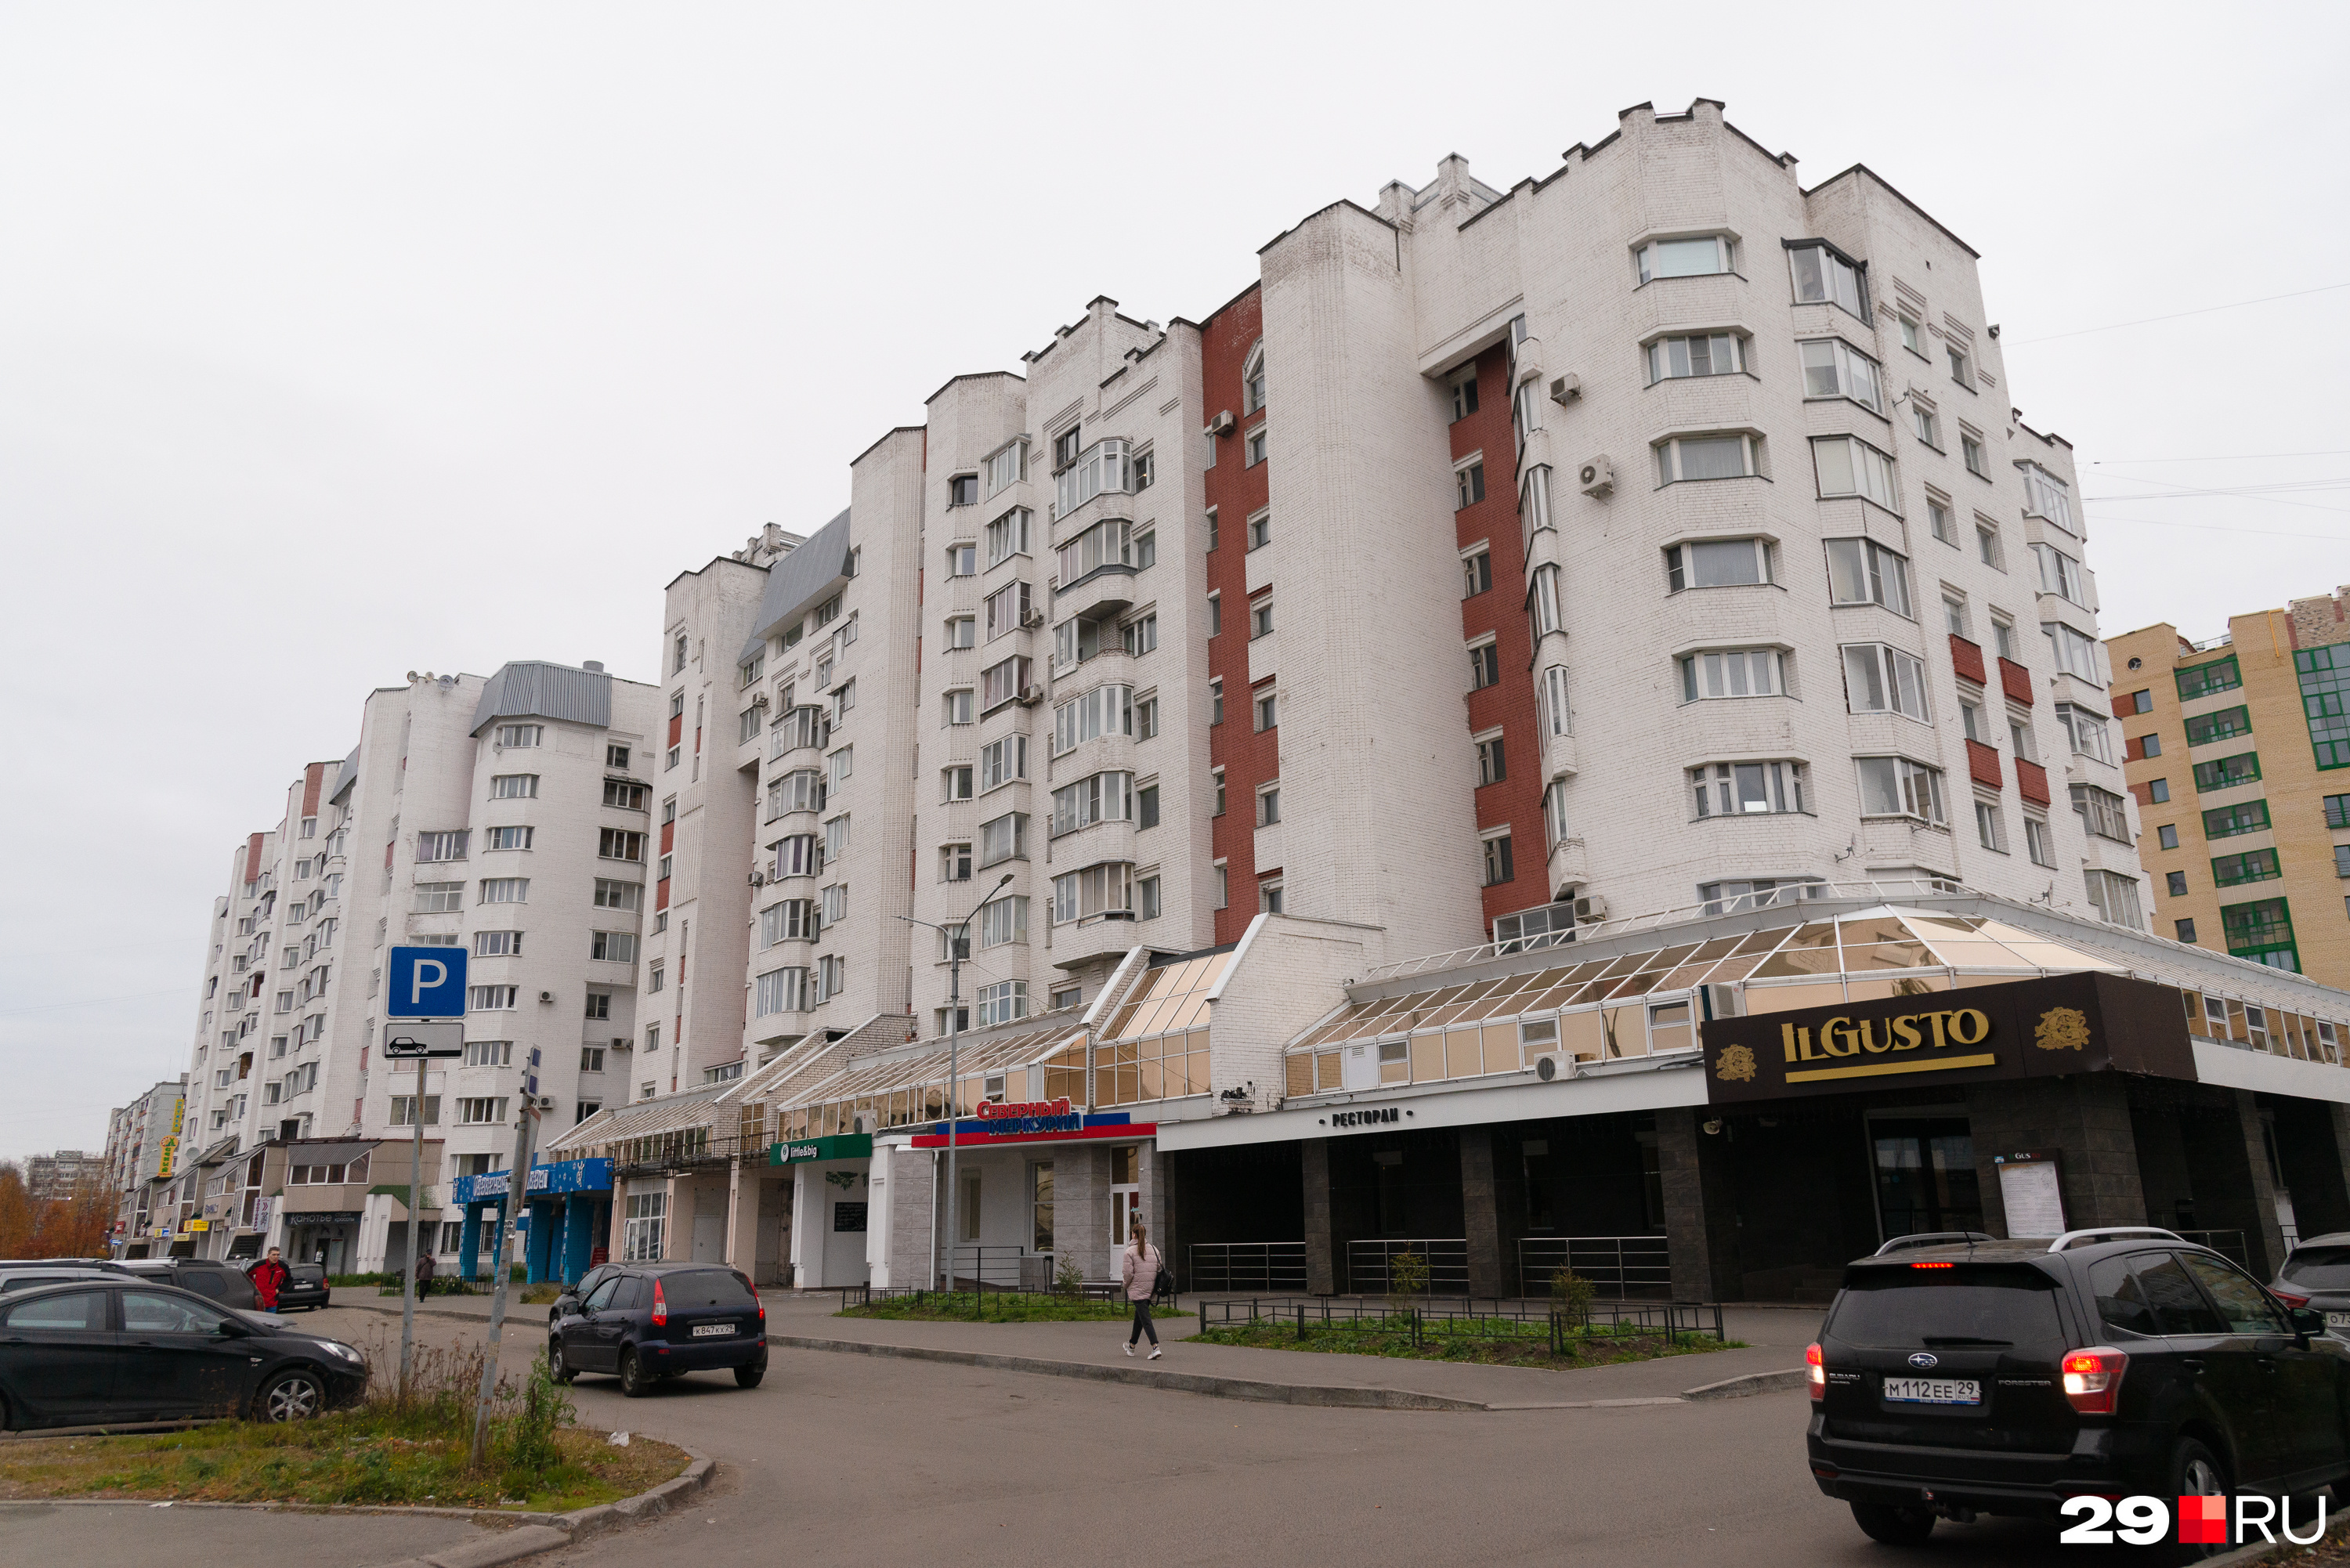 По дому на улице Выучейского в Архангельске видно, что если на проект не жалели денег, в нем обязательно появлялись многочисленные архитектурные изыски во вкусе строителей той поры